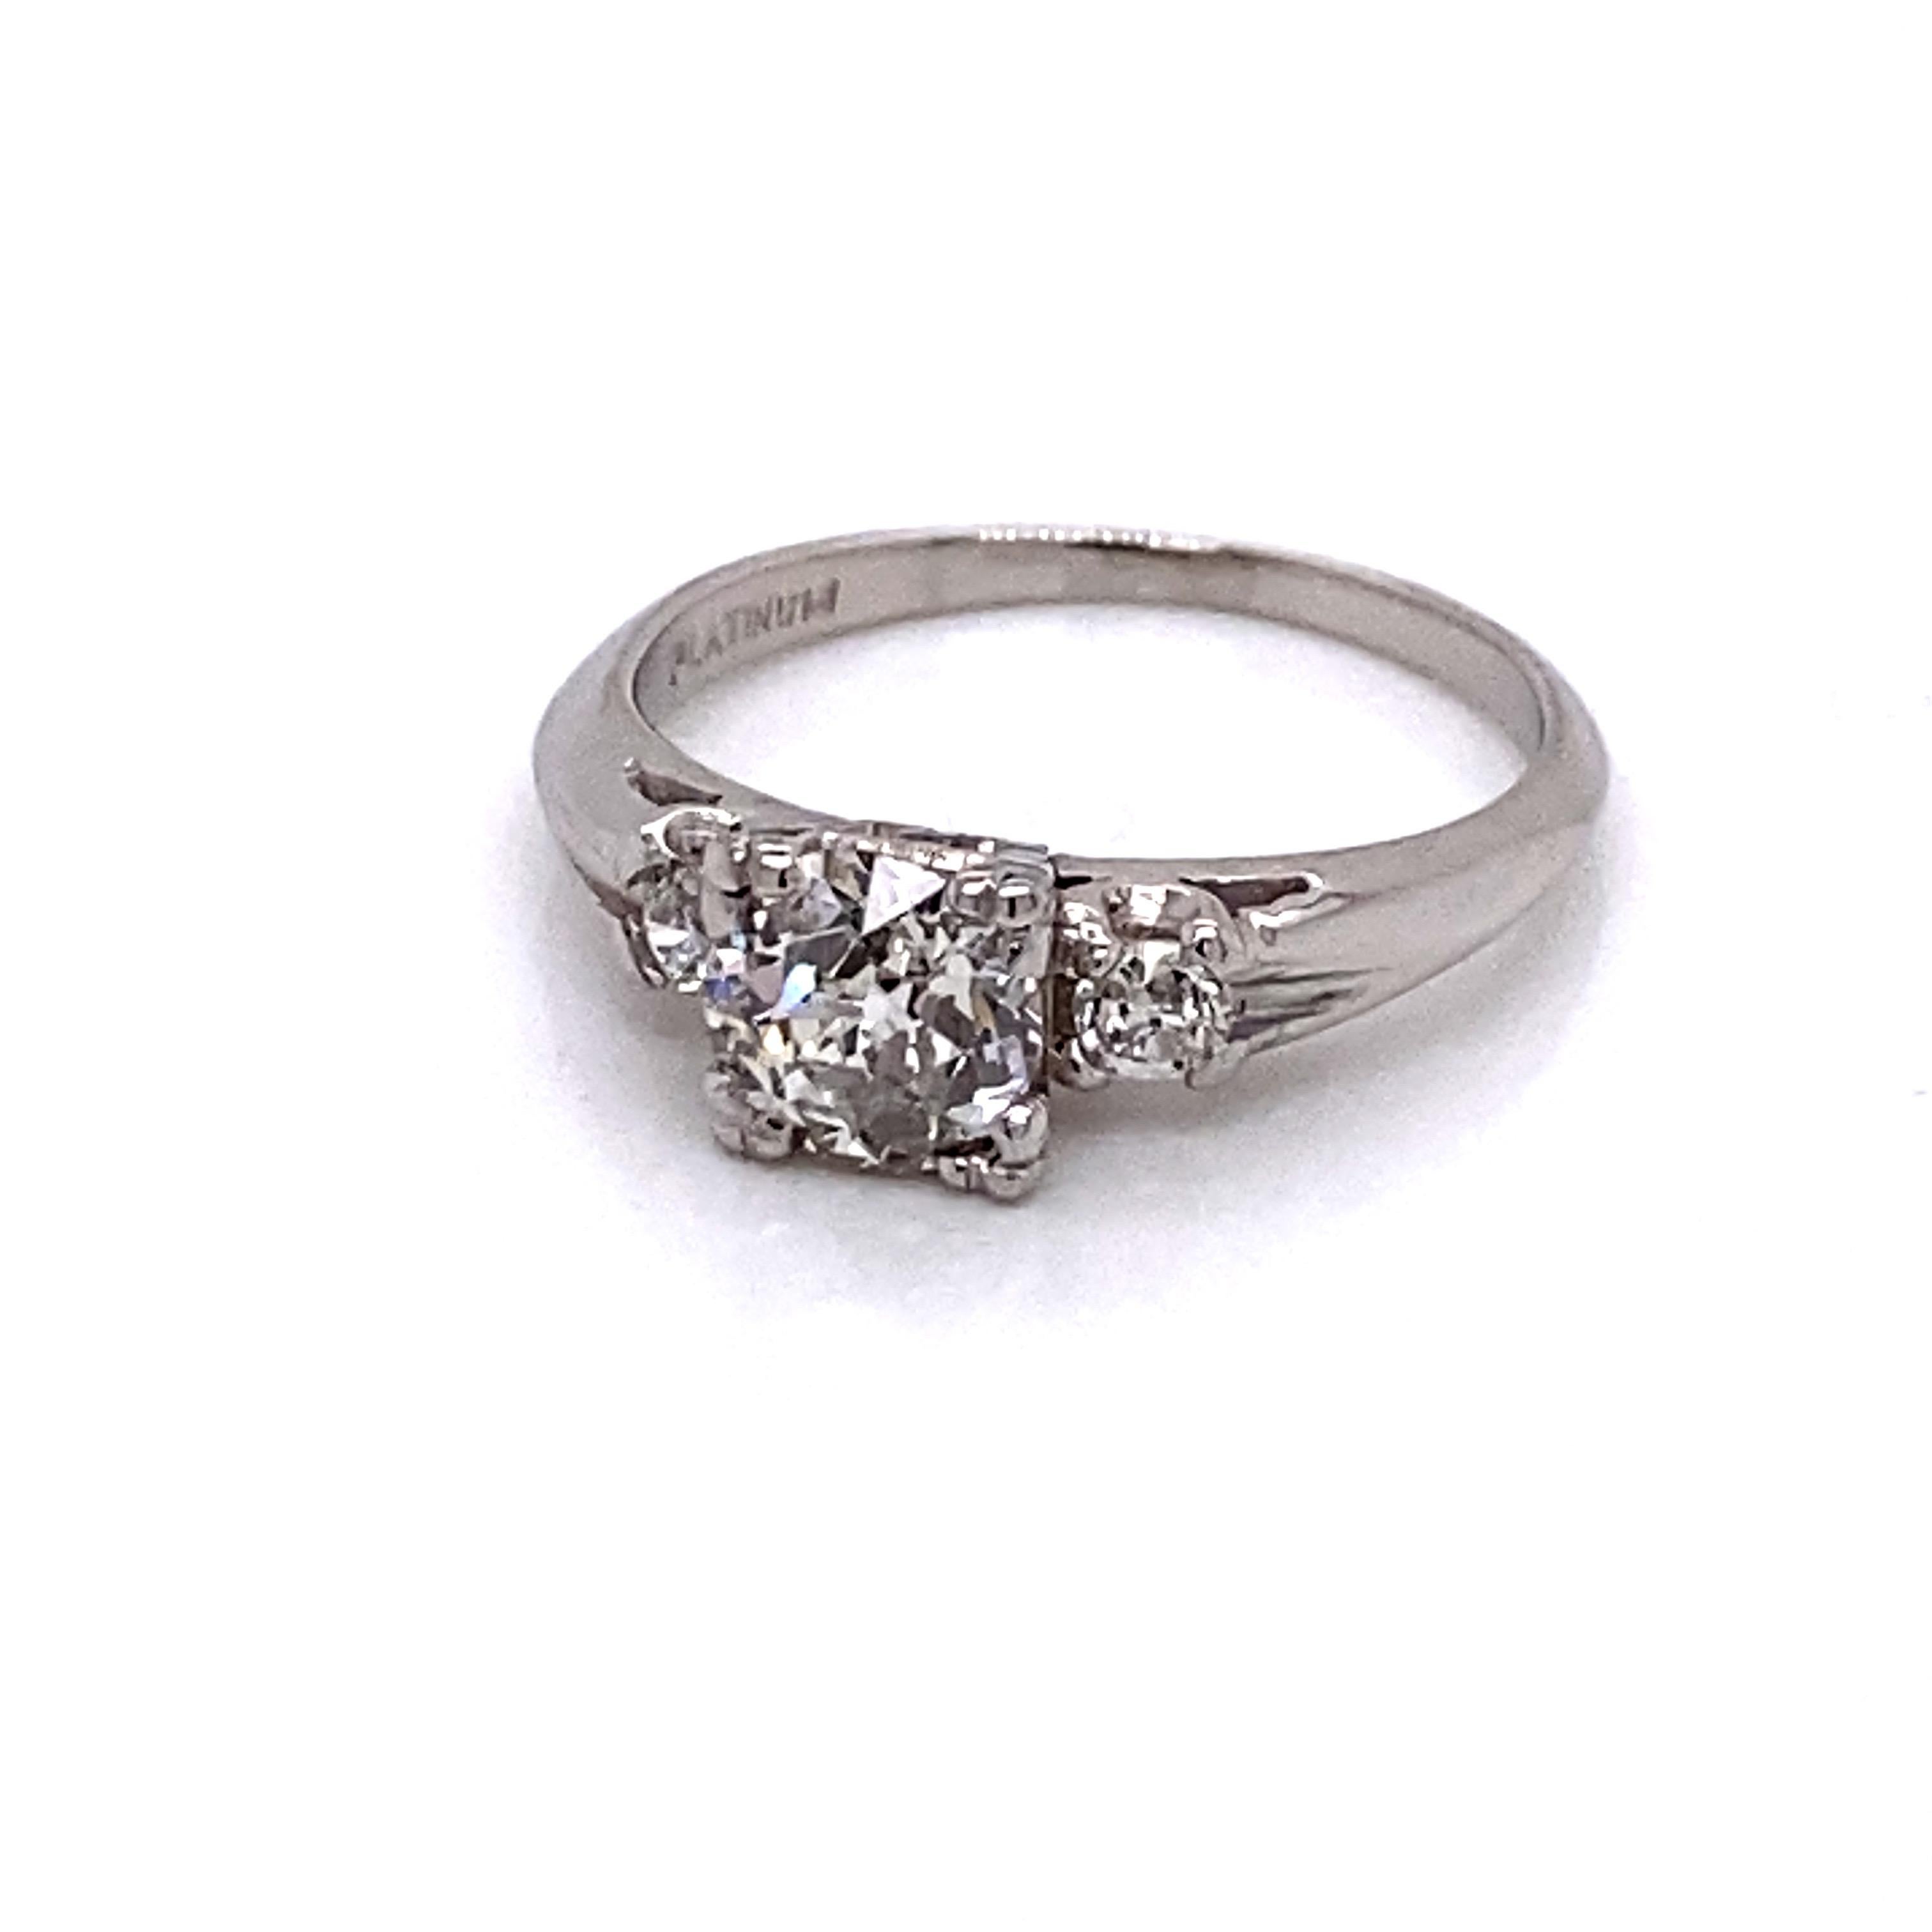 Vintage Platinum Art Deco 3 Stone Diamond Ring - Le diamant central de taille européenne pèse .84ct et est de couleur I et de pureté I1. Le diamant est serti dans une tête en forme de queue de poisson. Les deux diamants latéraux sont également de